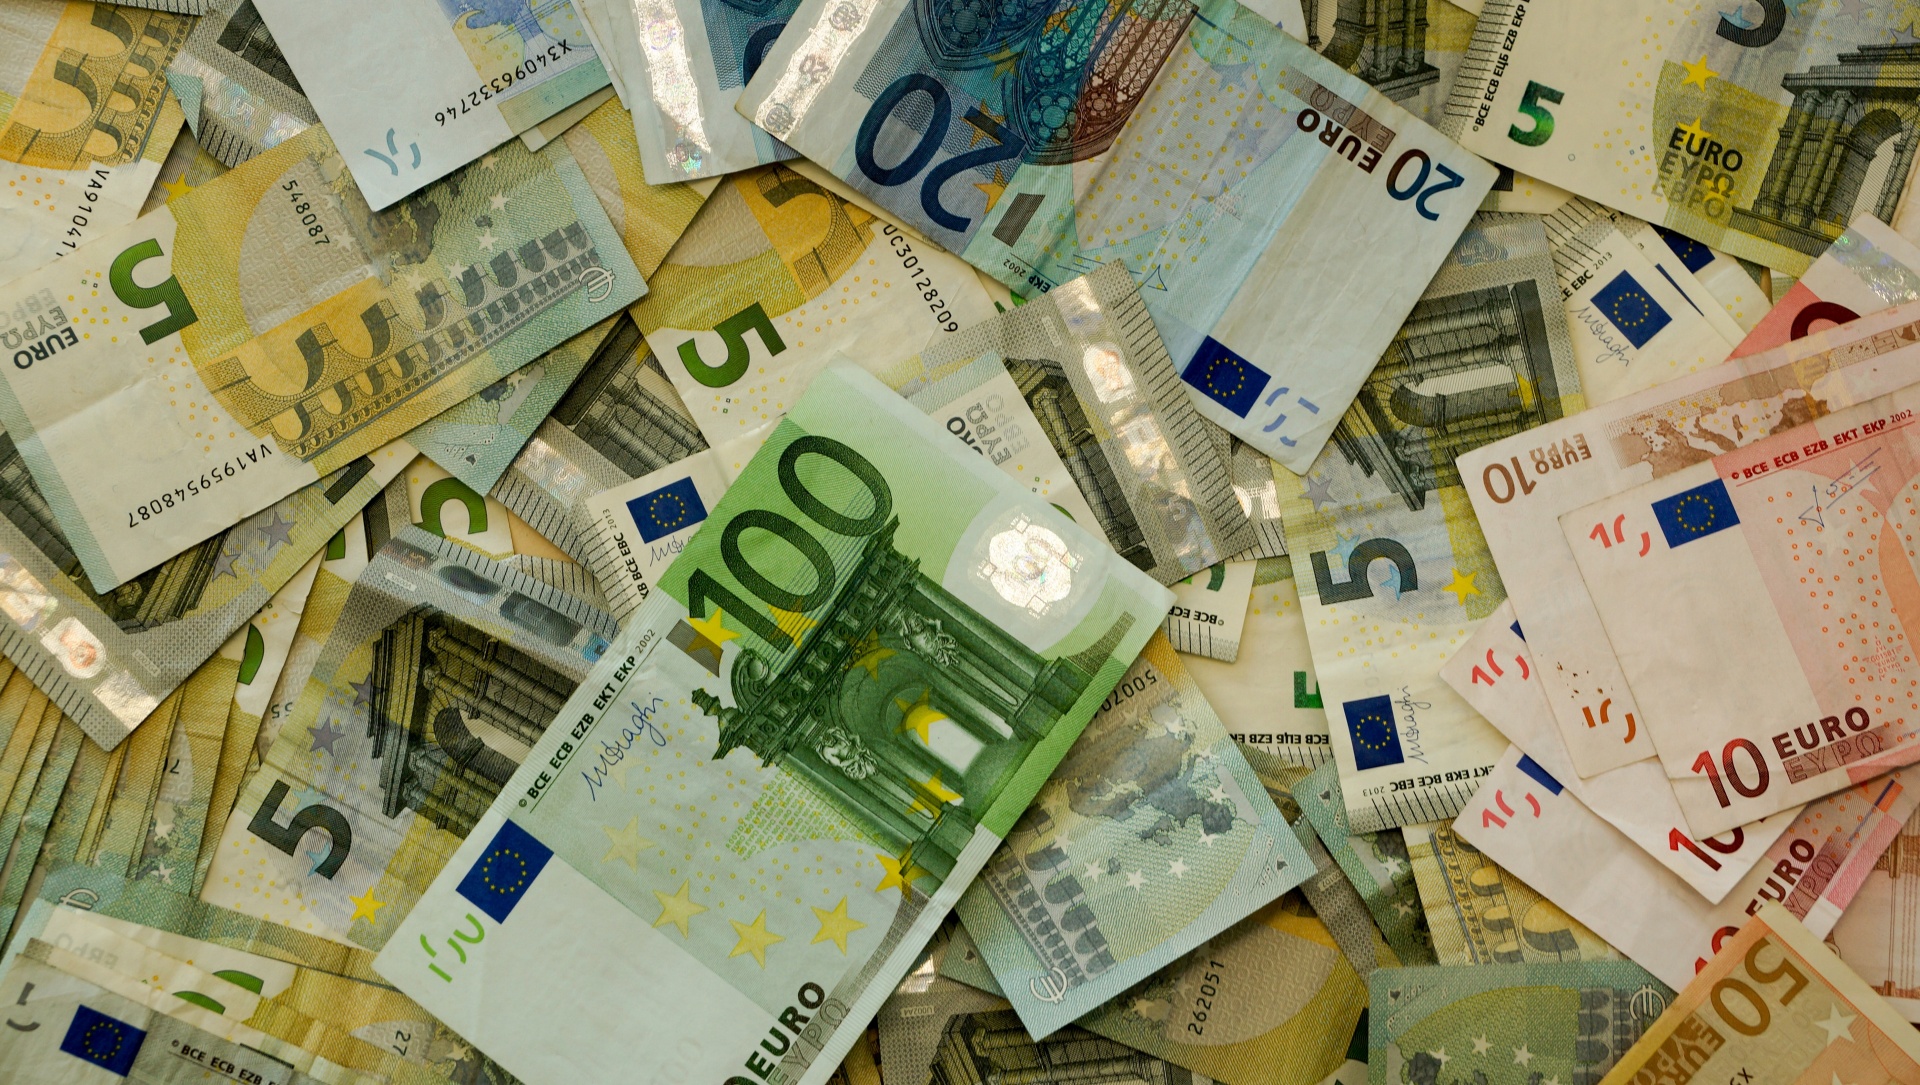 As notas de euro